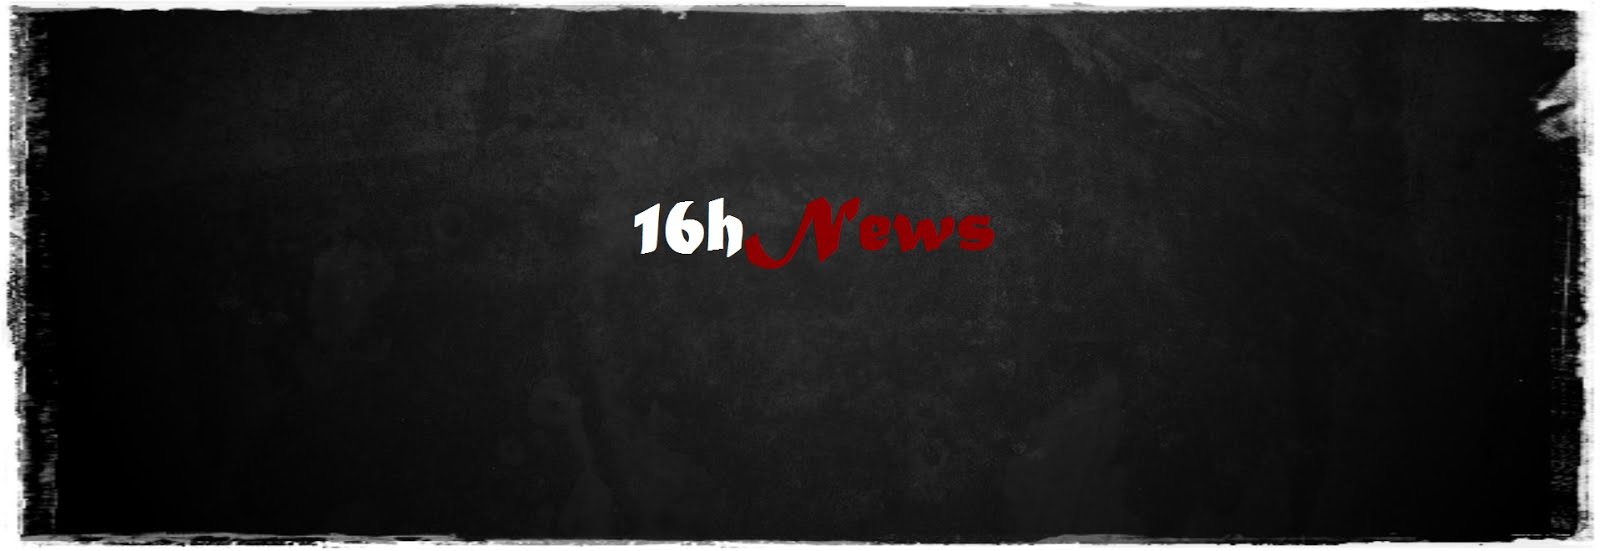 16hNews